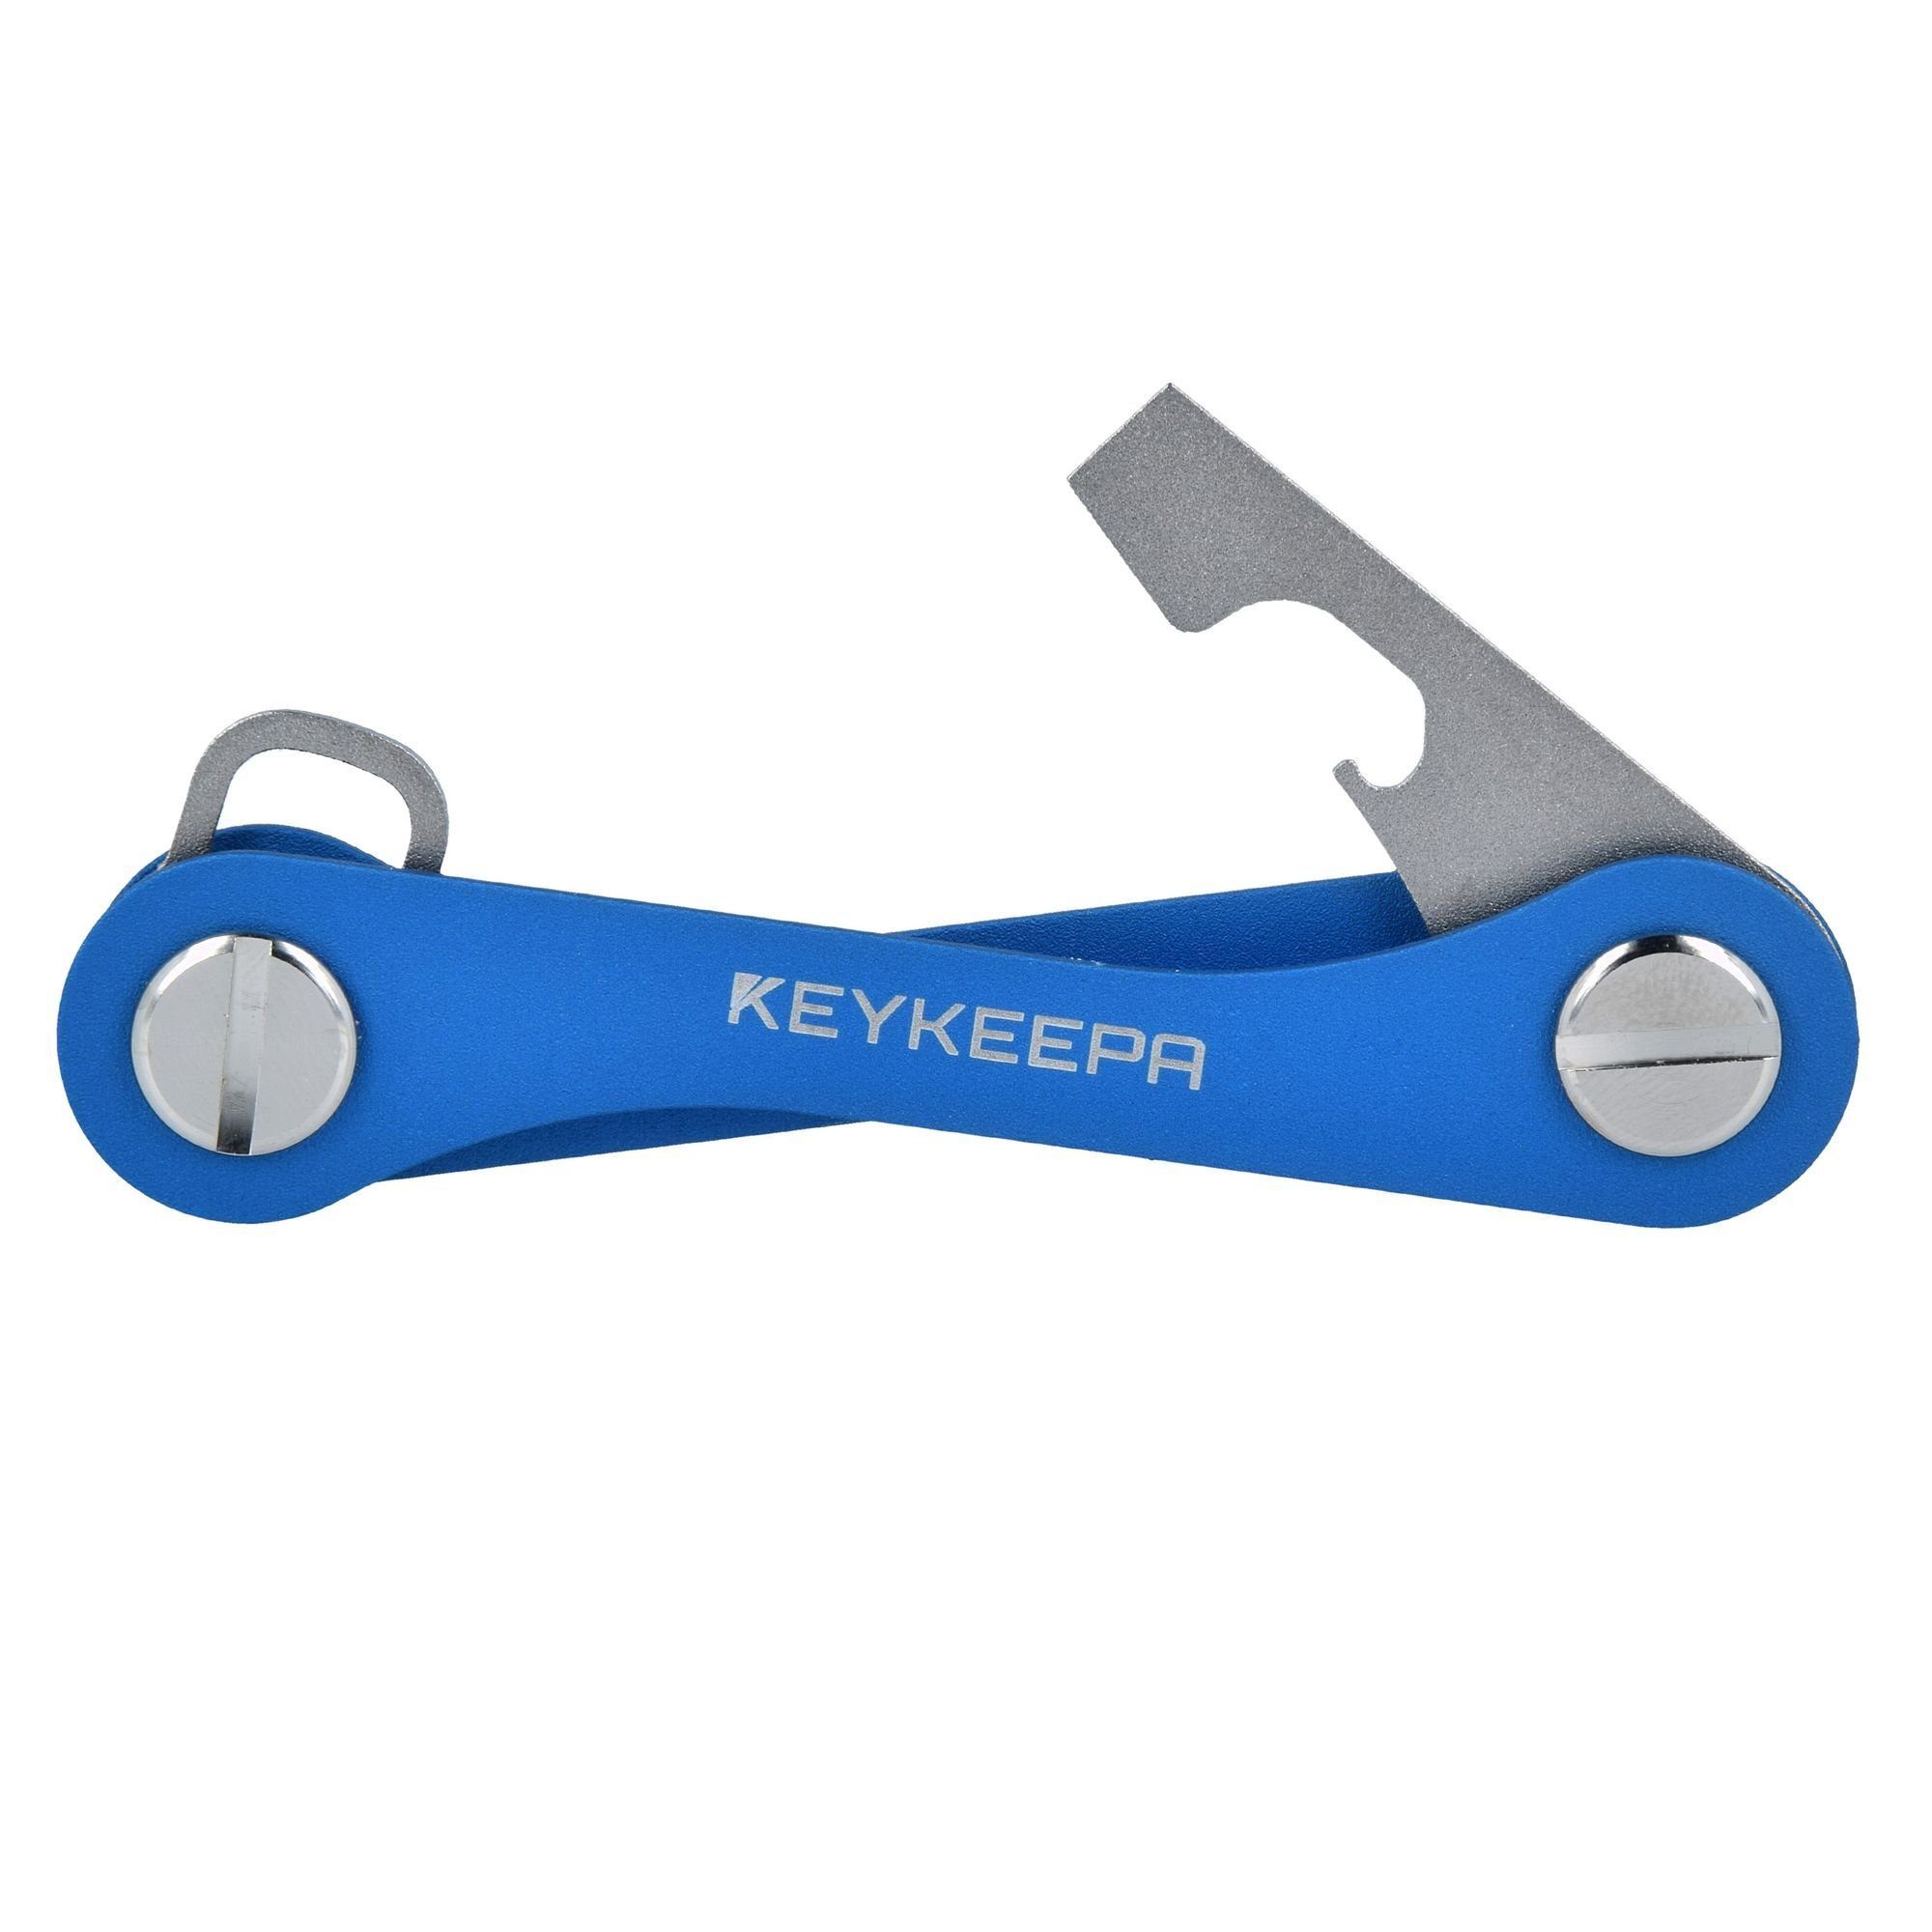 Schlüsseltasche Classic, blue Keykeepa Aluminium